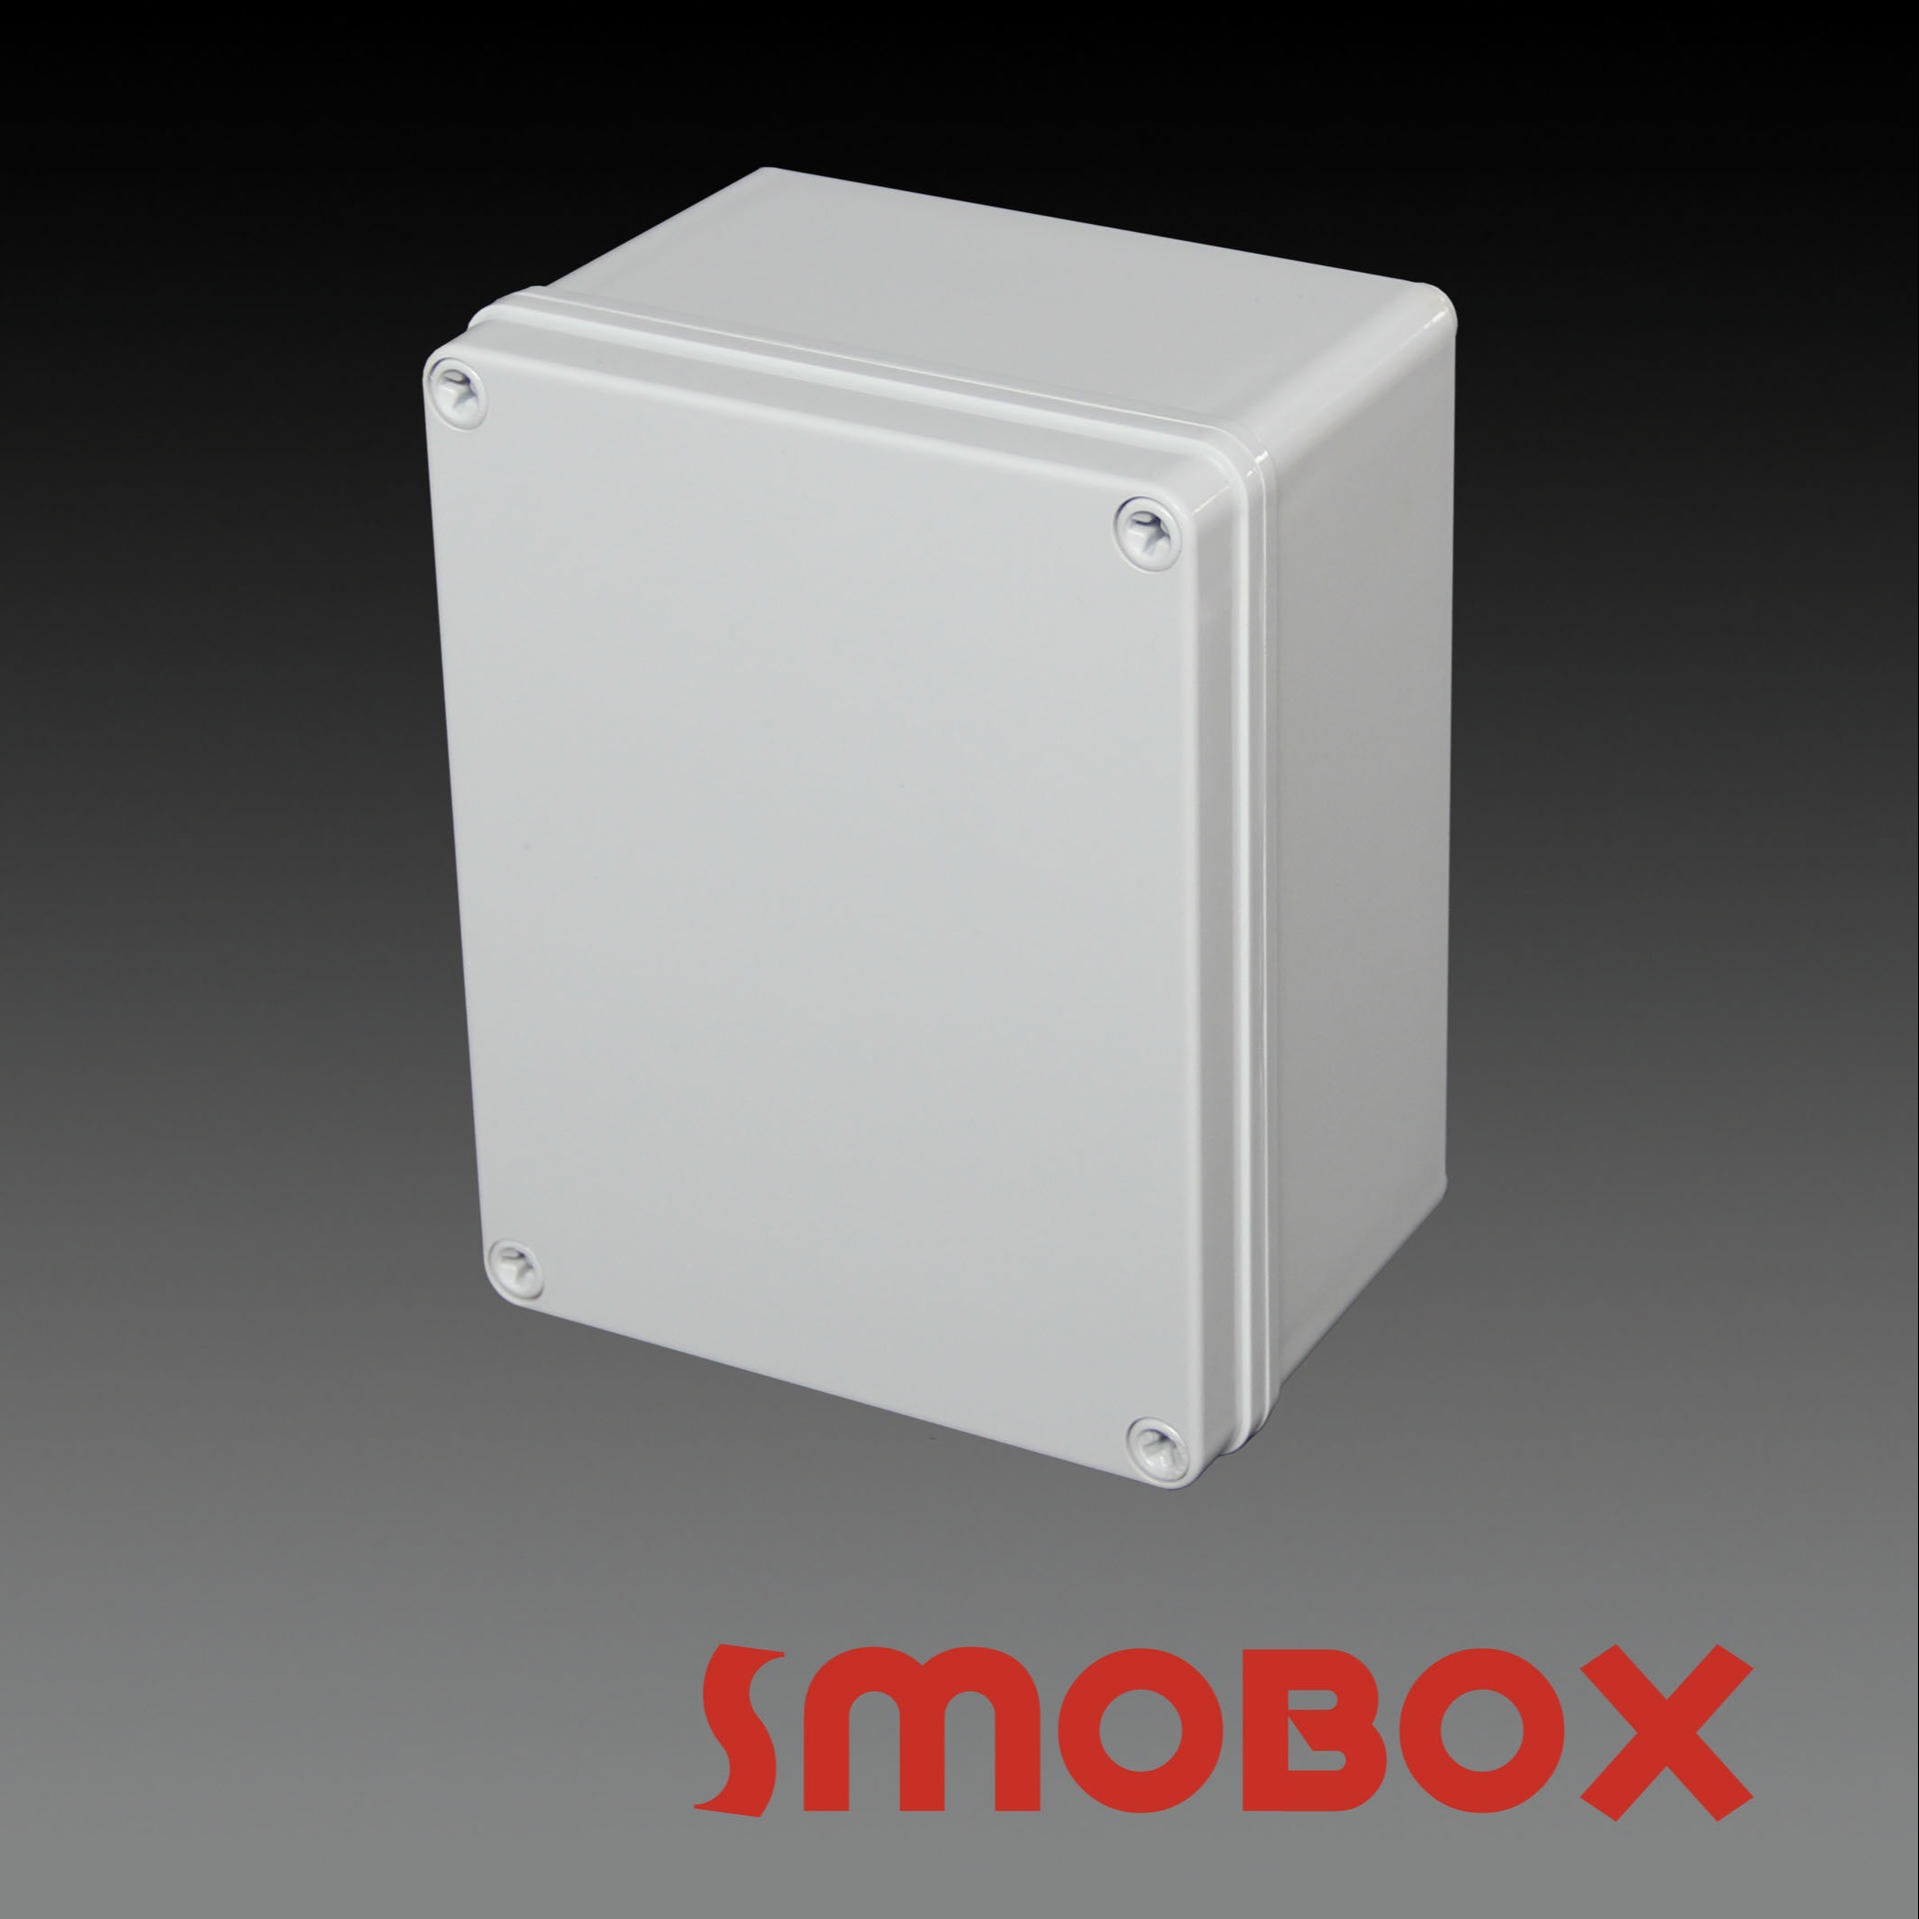 SMOBOX塑料接线箱LD-141709 防水接线盒 塑料按钮盒  防尘防水塑料外壳 仪器仪表外壳图片